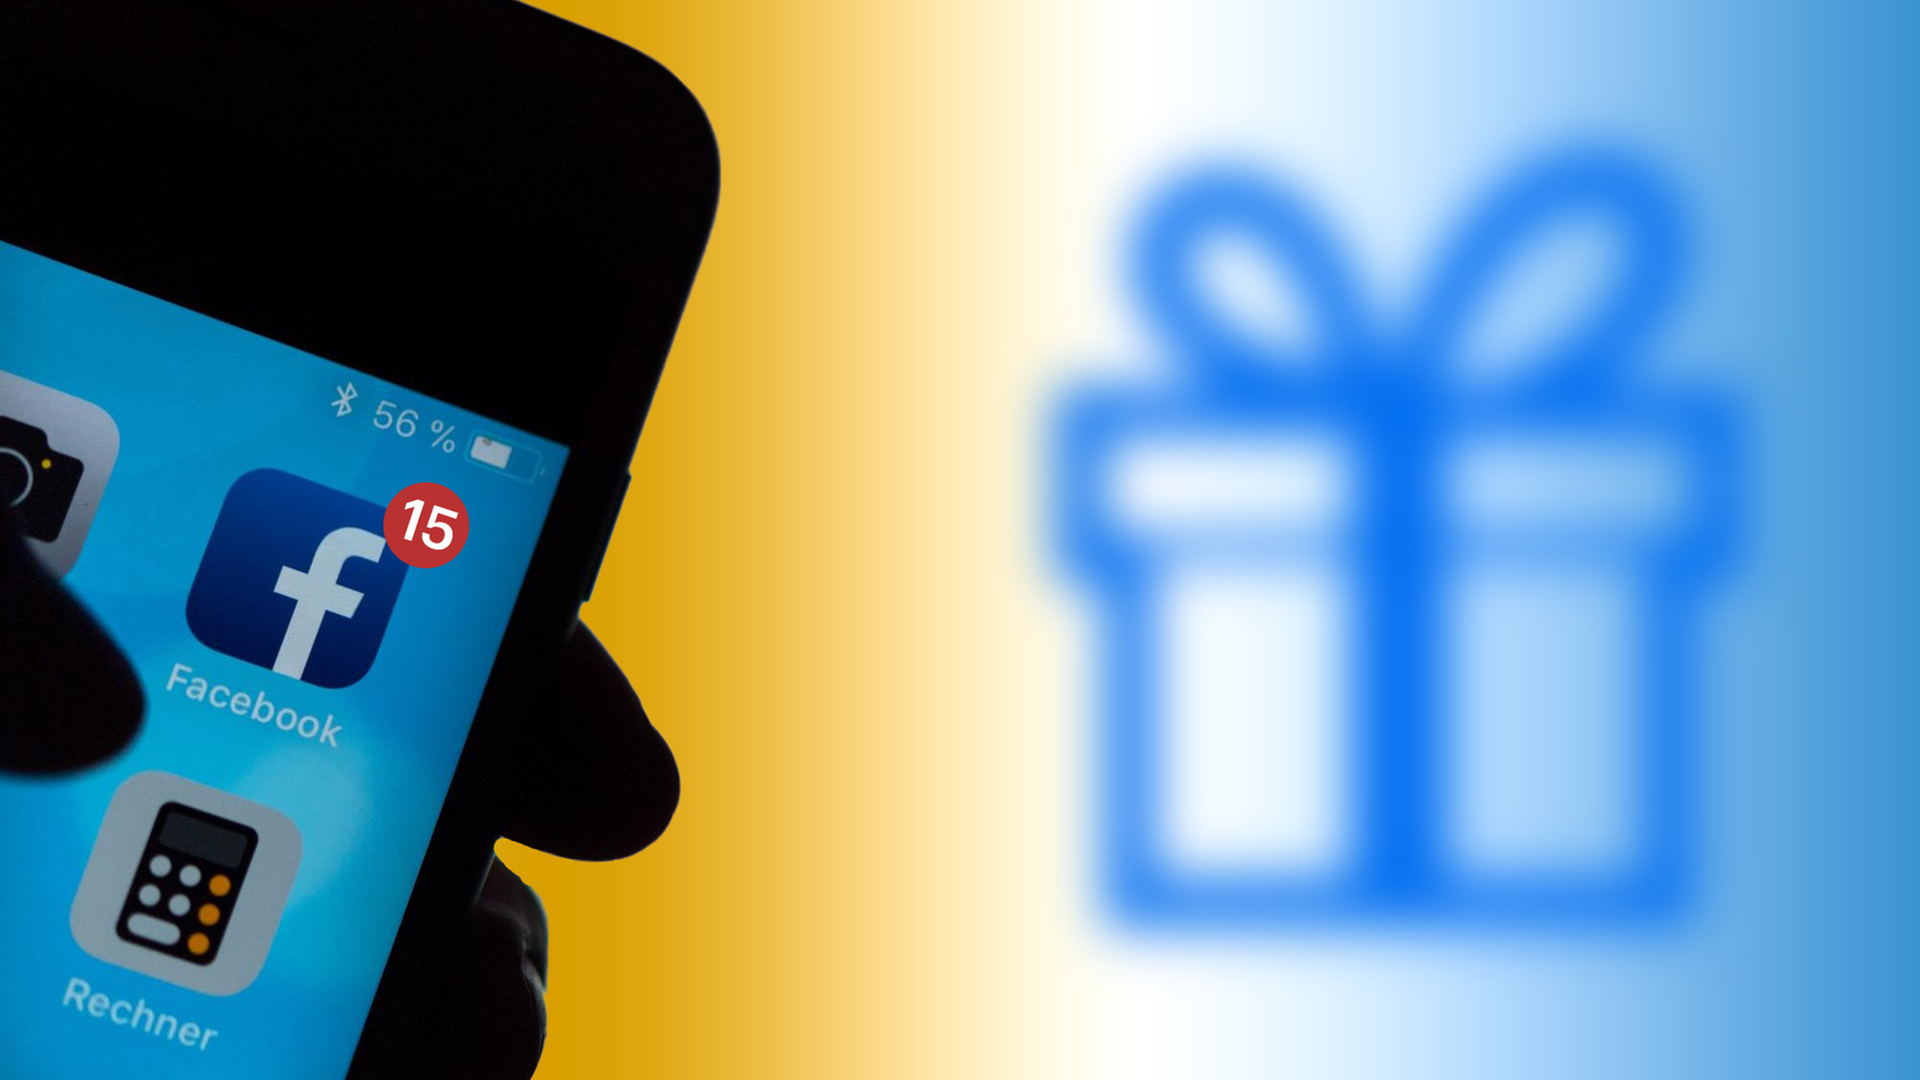 Das Logo des sozialen Netzwerks Facebook ist auf dem Display eines Smartphones zu sehen, zusammen mit der Zahl 15. Im Hintergrund wird ein iconisiertes Geschenkpaket gezeigt.